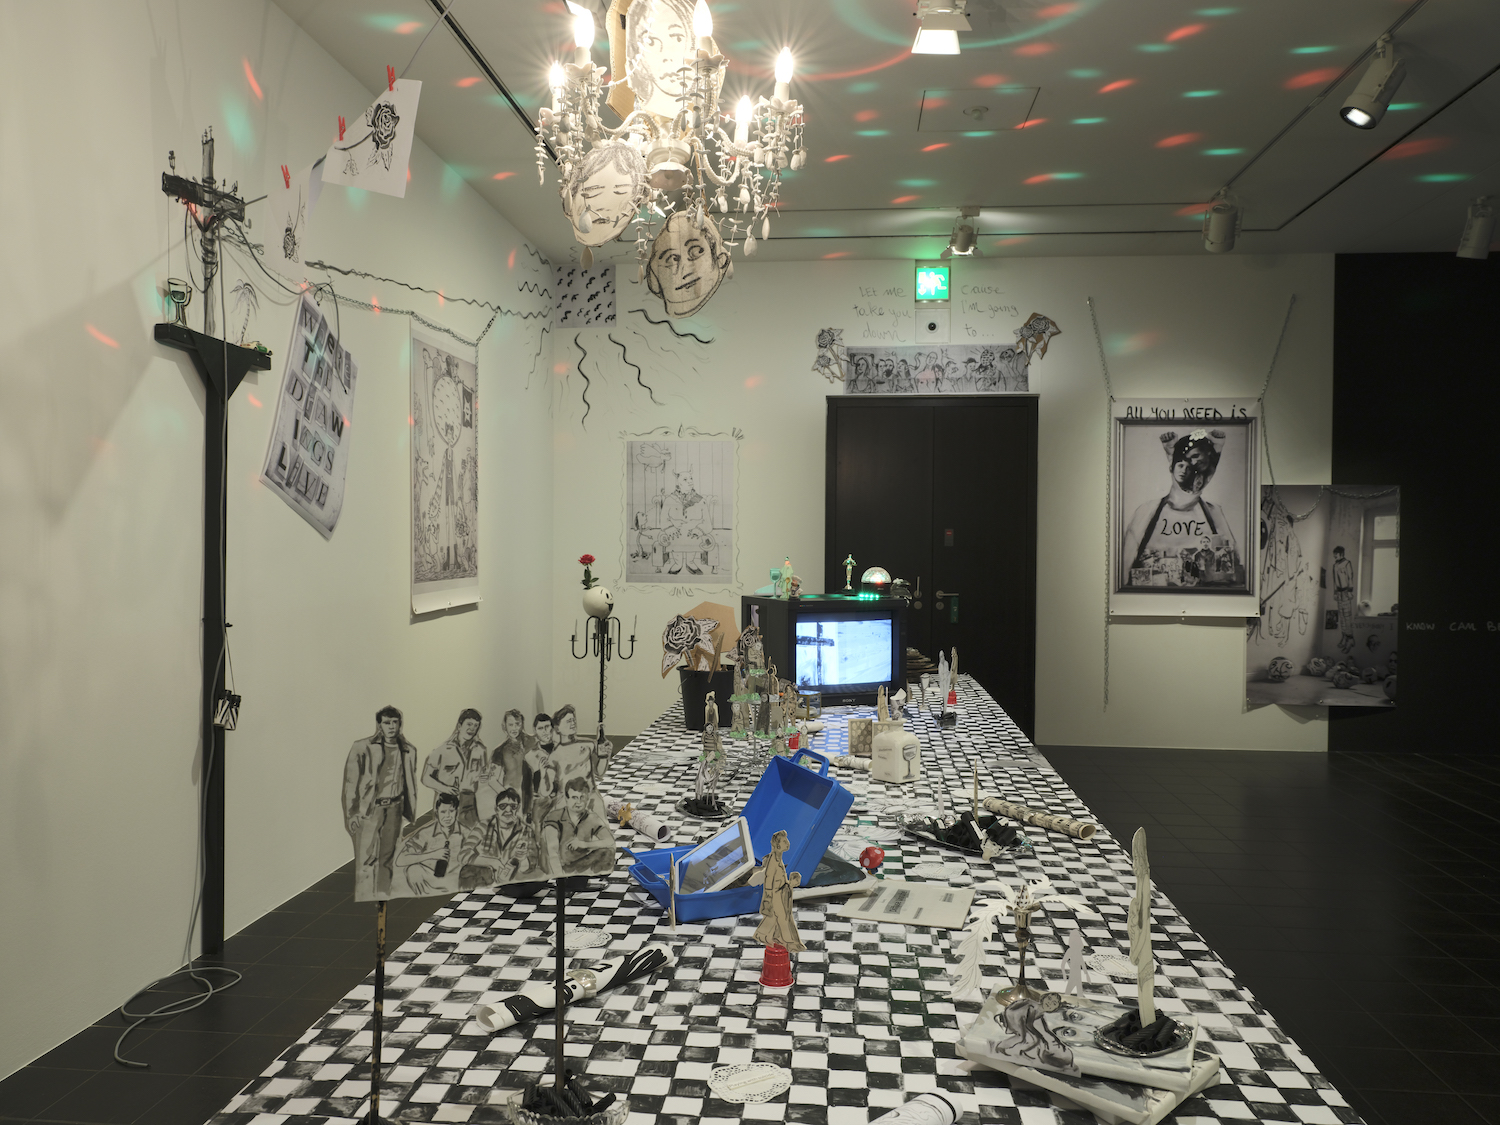 Installation von Serena Ferrario mit Schwarz-Weiß-Zeichnungen auf Schachbrettmuster und einem Kronleuchter an der Decke.